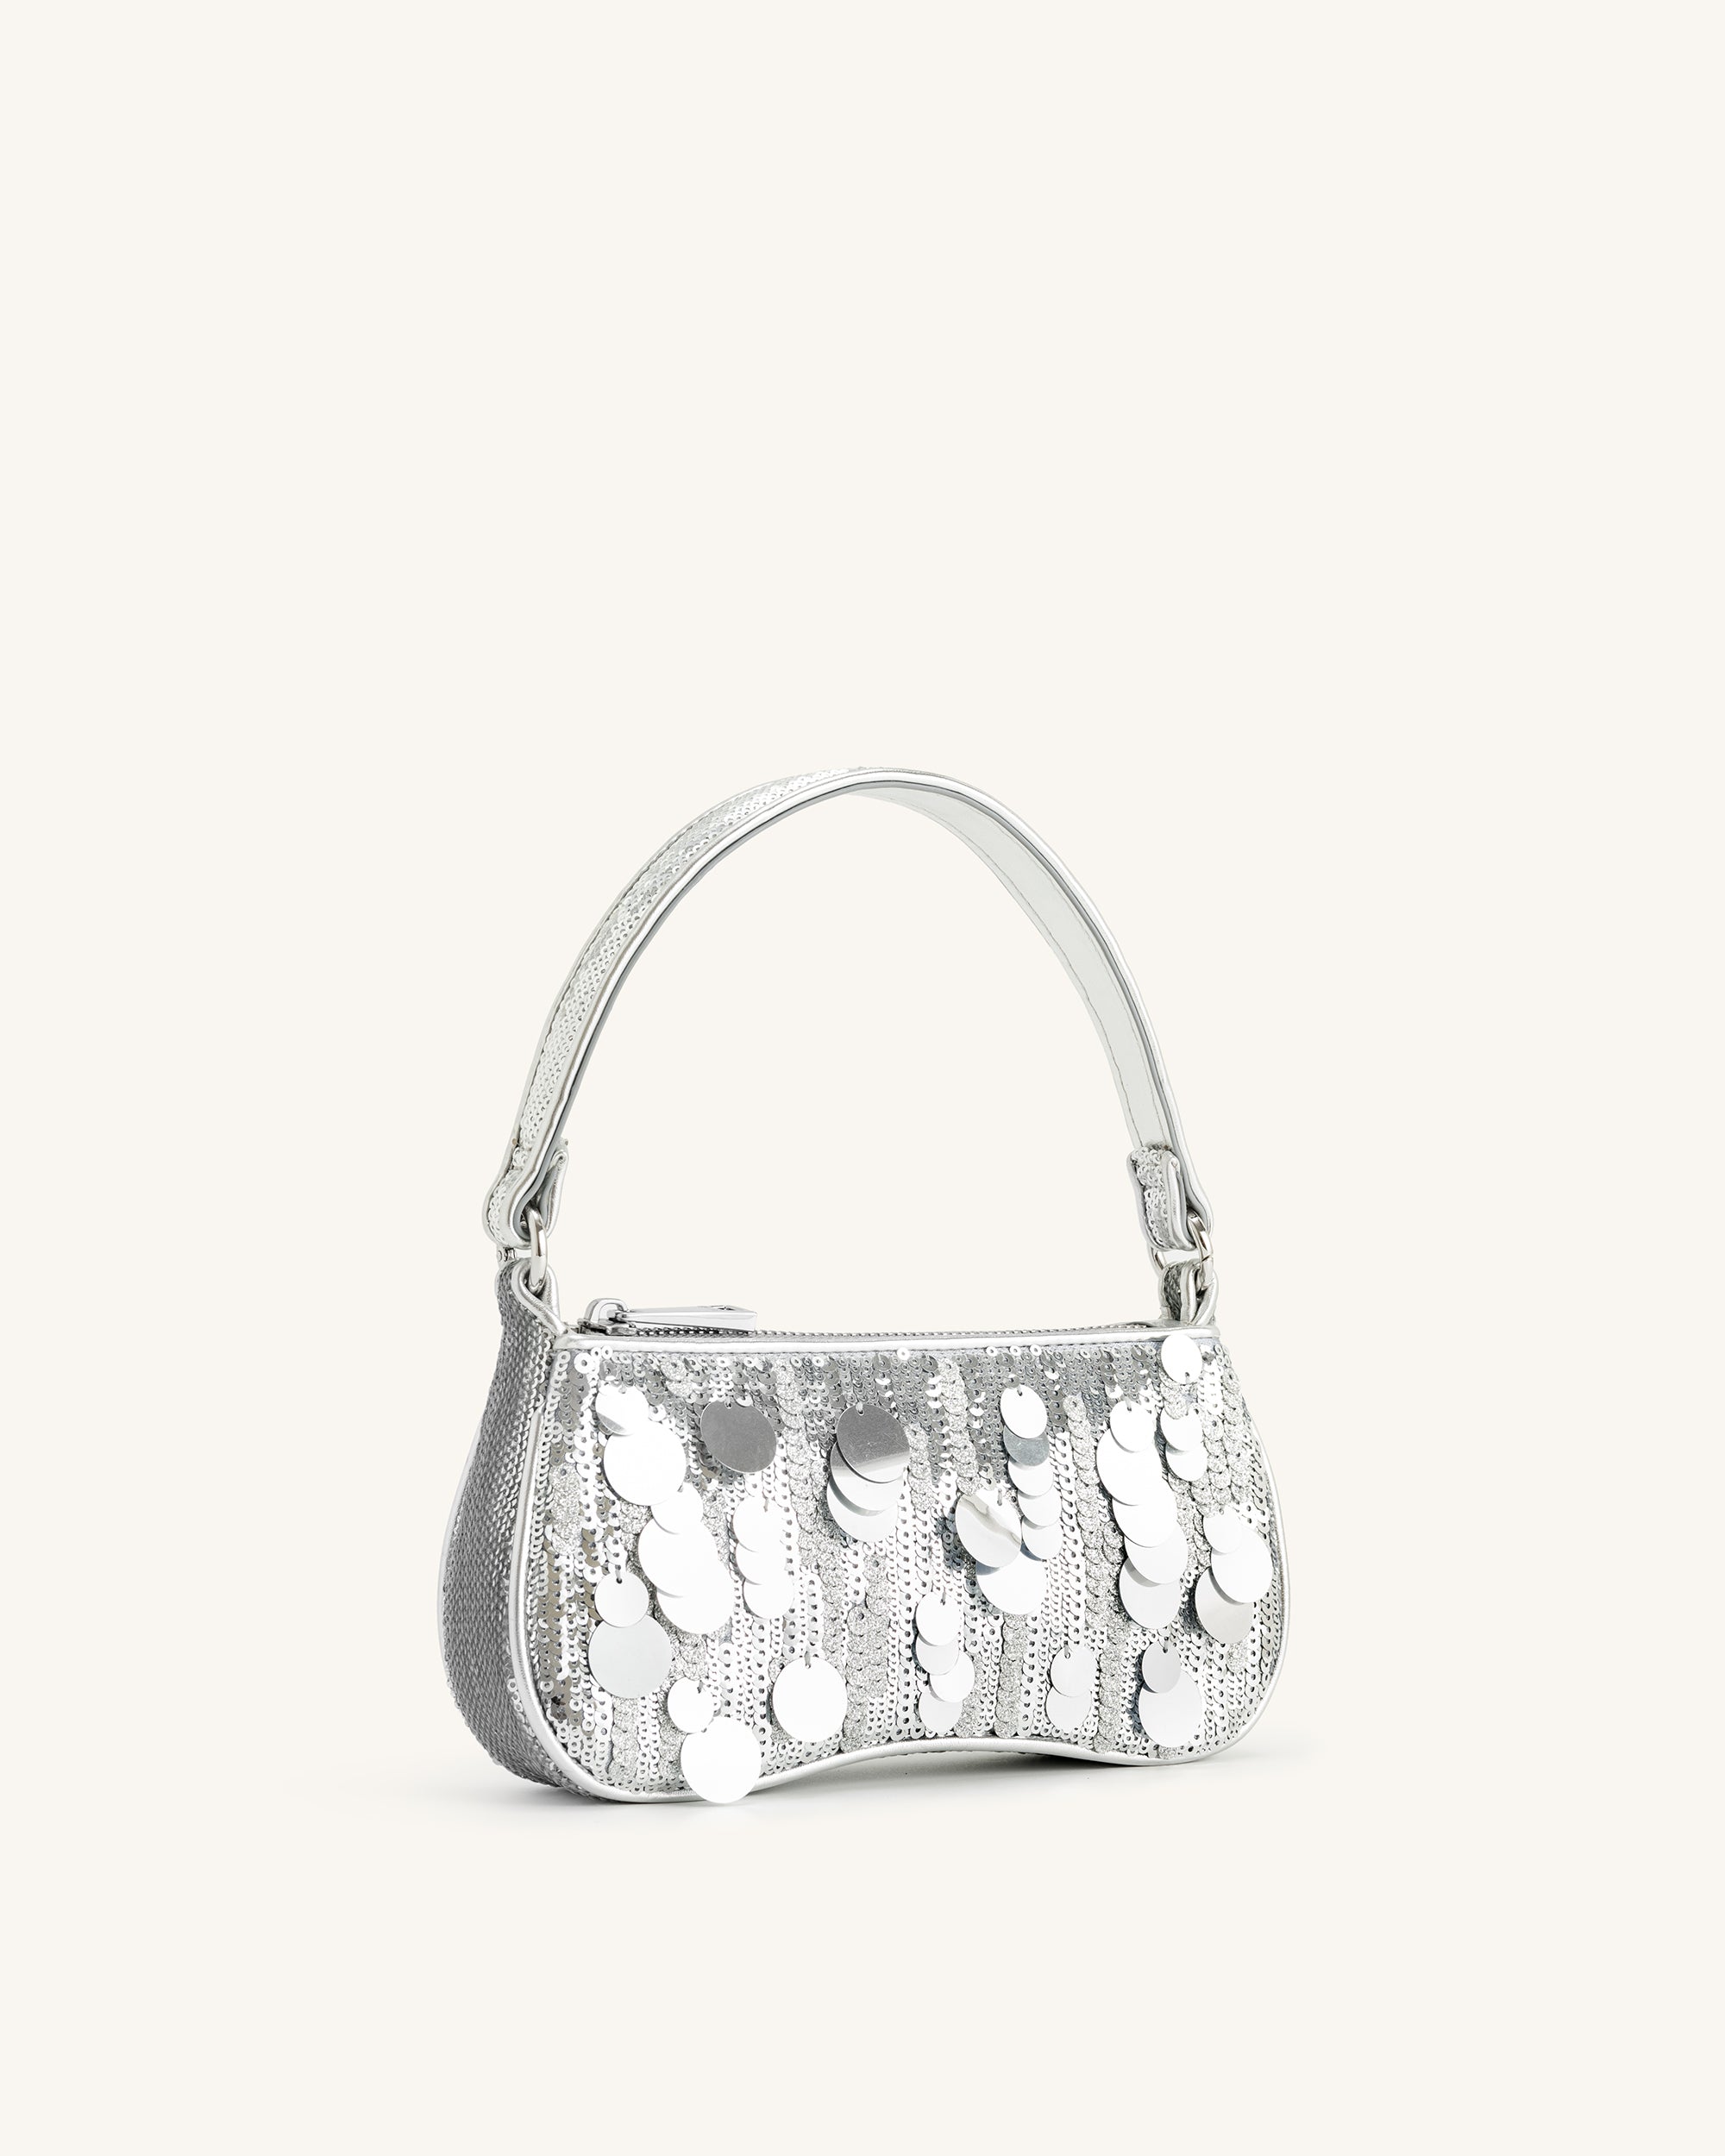 La borsa a tracolla mini in paillettes metalliche Eva - Argento